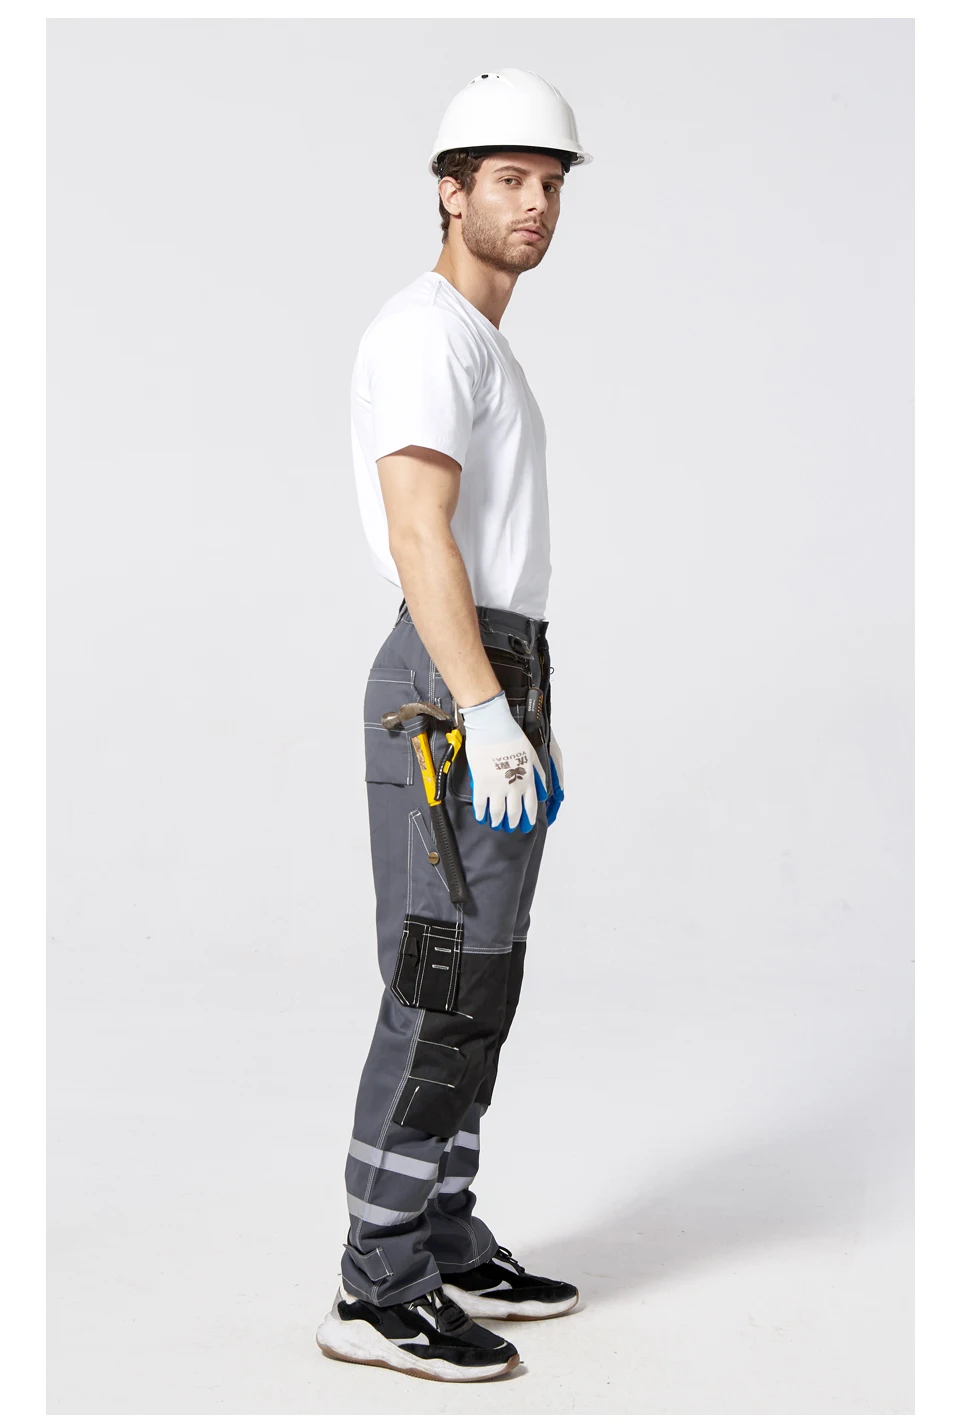 Bauskydd B114 Спецодежда осень зима рабочие штаны синяя защитная Рабочая одежда мужские с несколькими карманами брюки хлопок